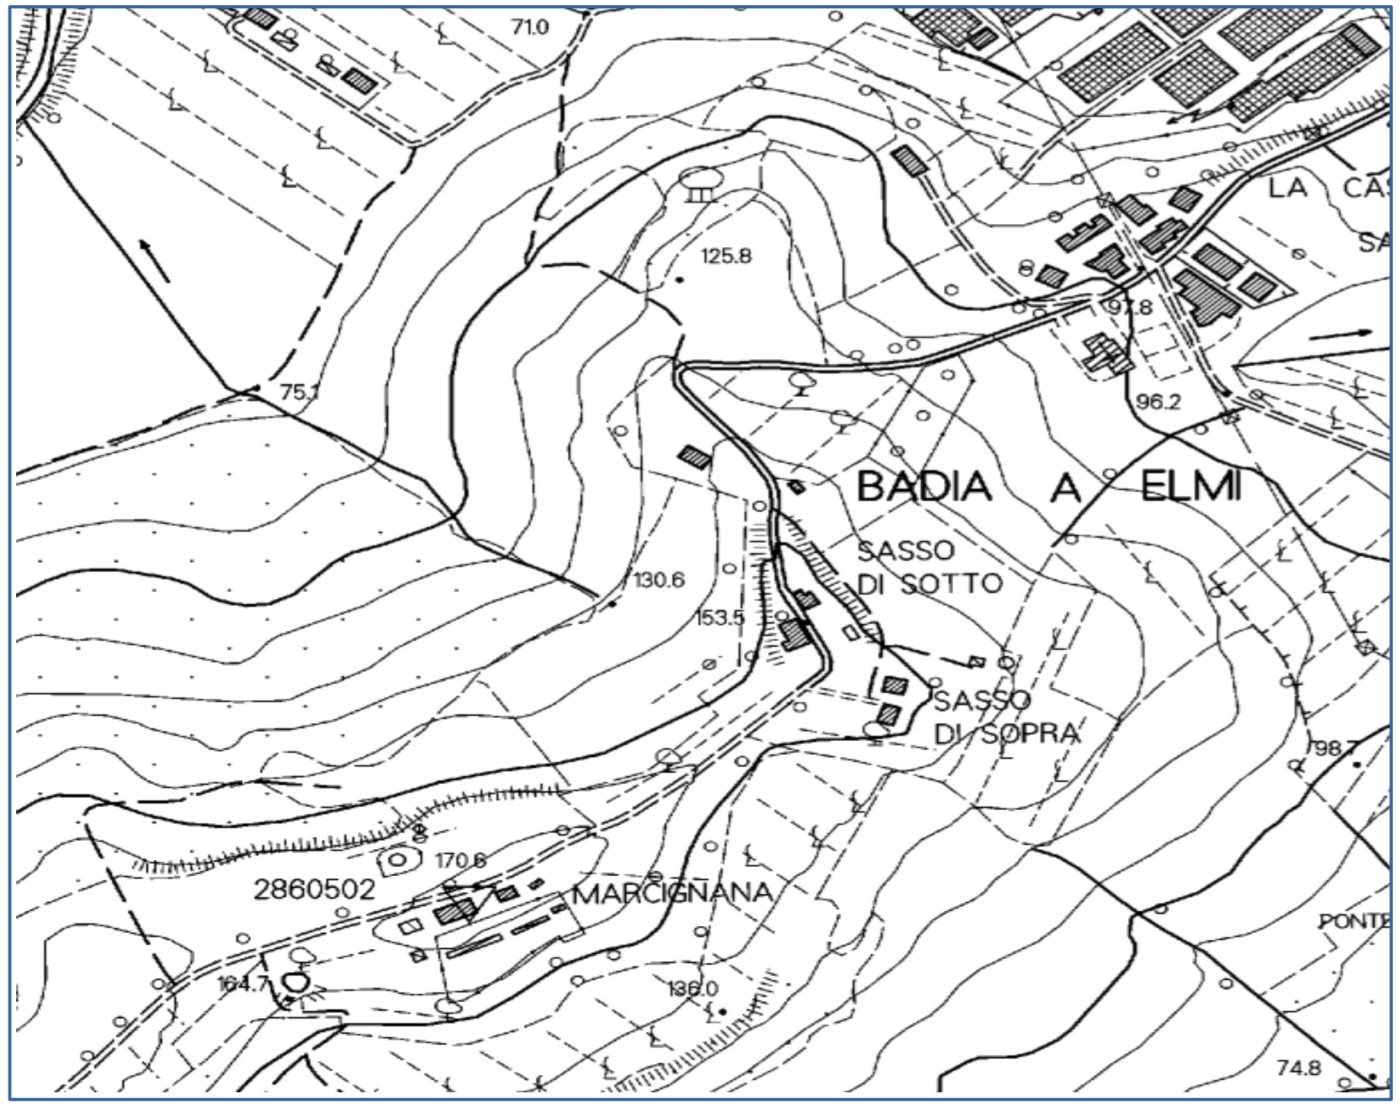 Fig. 15 – estratto della mappa topografica scala 1:10000 relativa all'area di Badia a Elmi da cui si evidenzia la morfologia della zona in cui si trova la località Sasso (da Cartoteca Reg.Toscana)